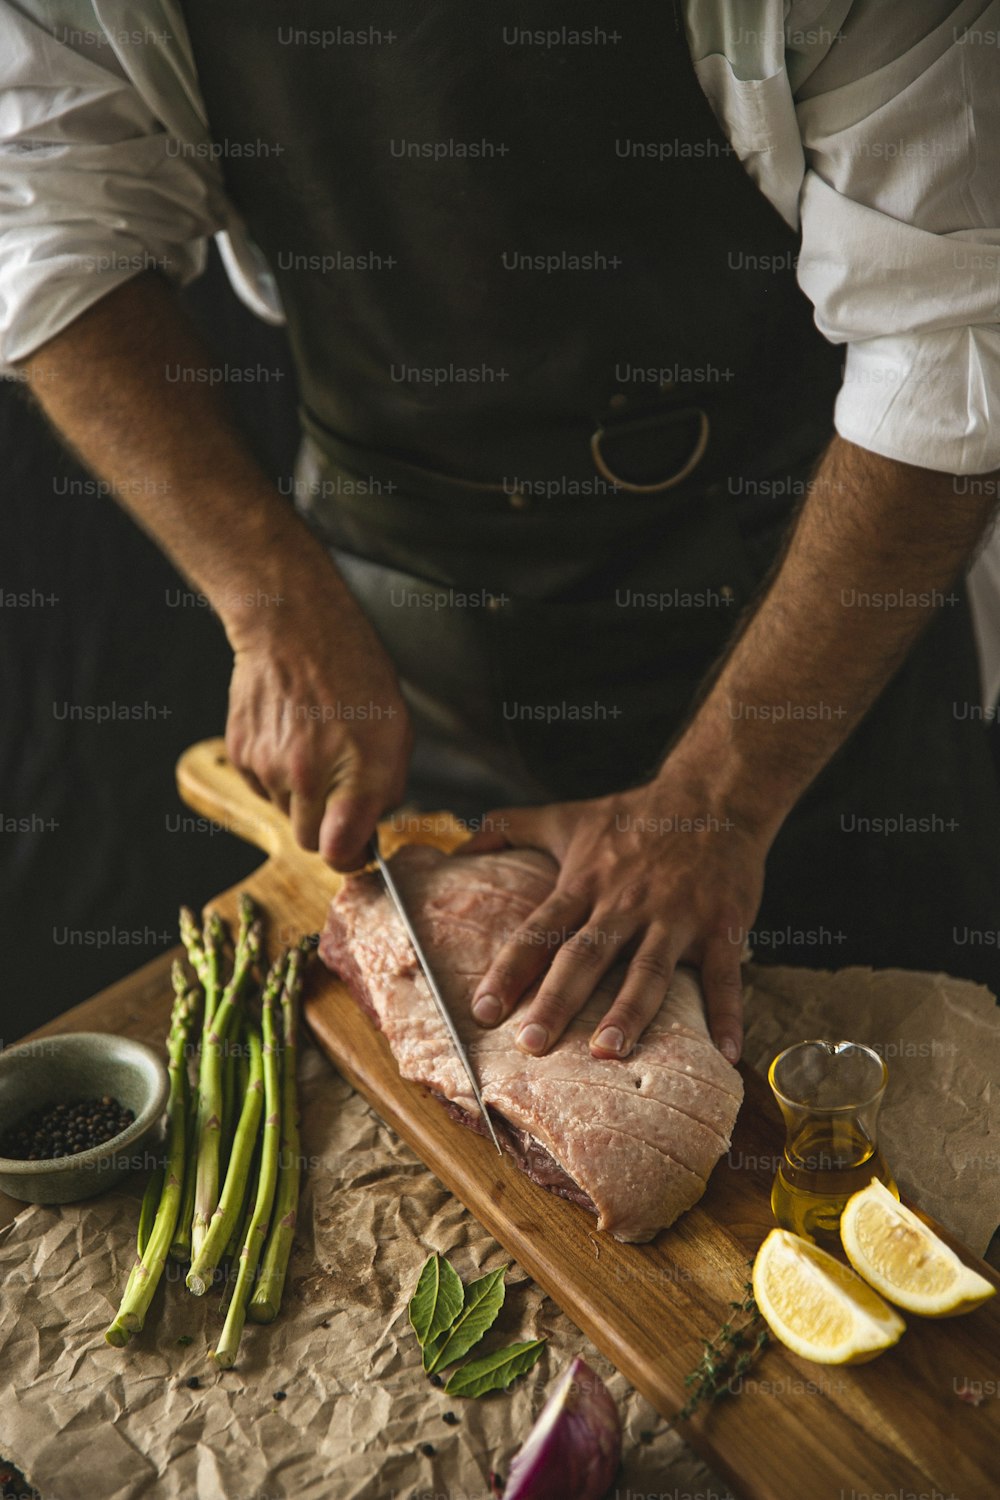 una persona cortando un trozo de carne en una tabla de cortar